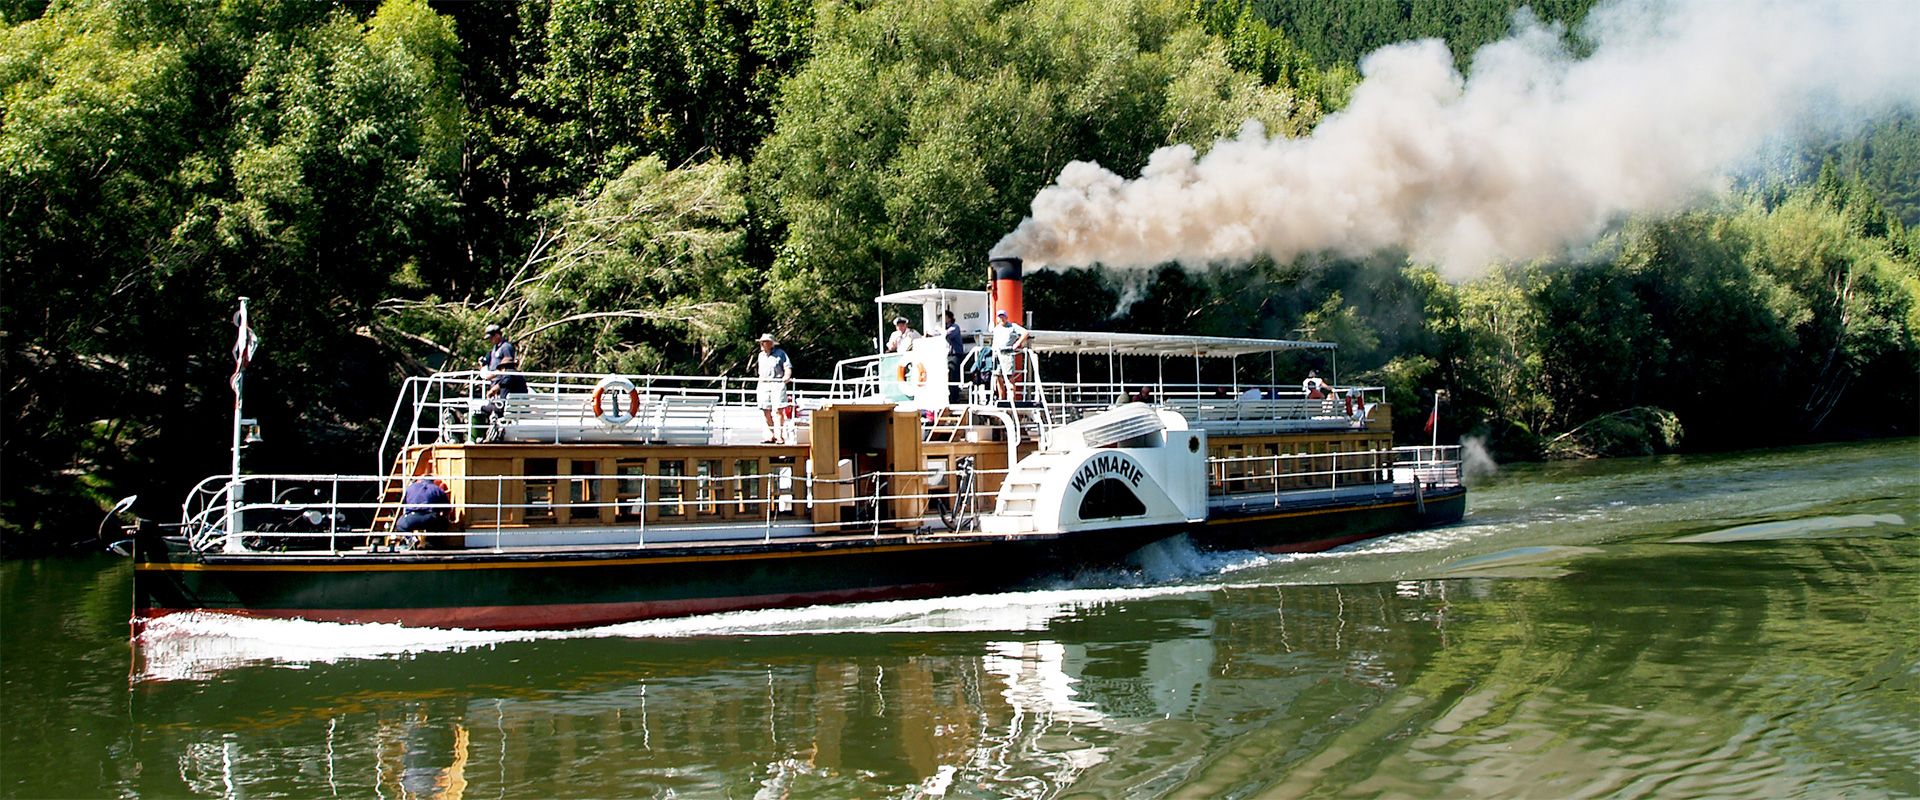 Whanganui river steam boat